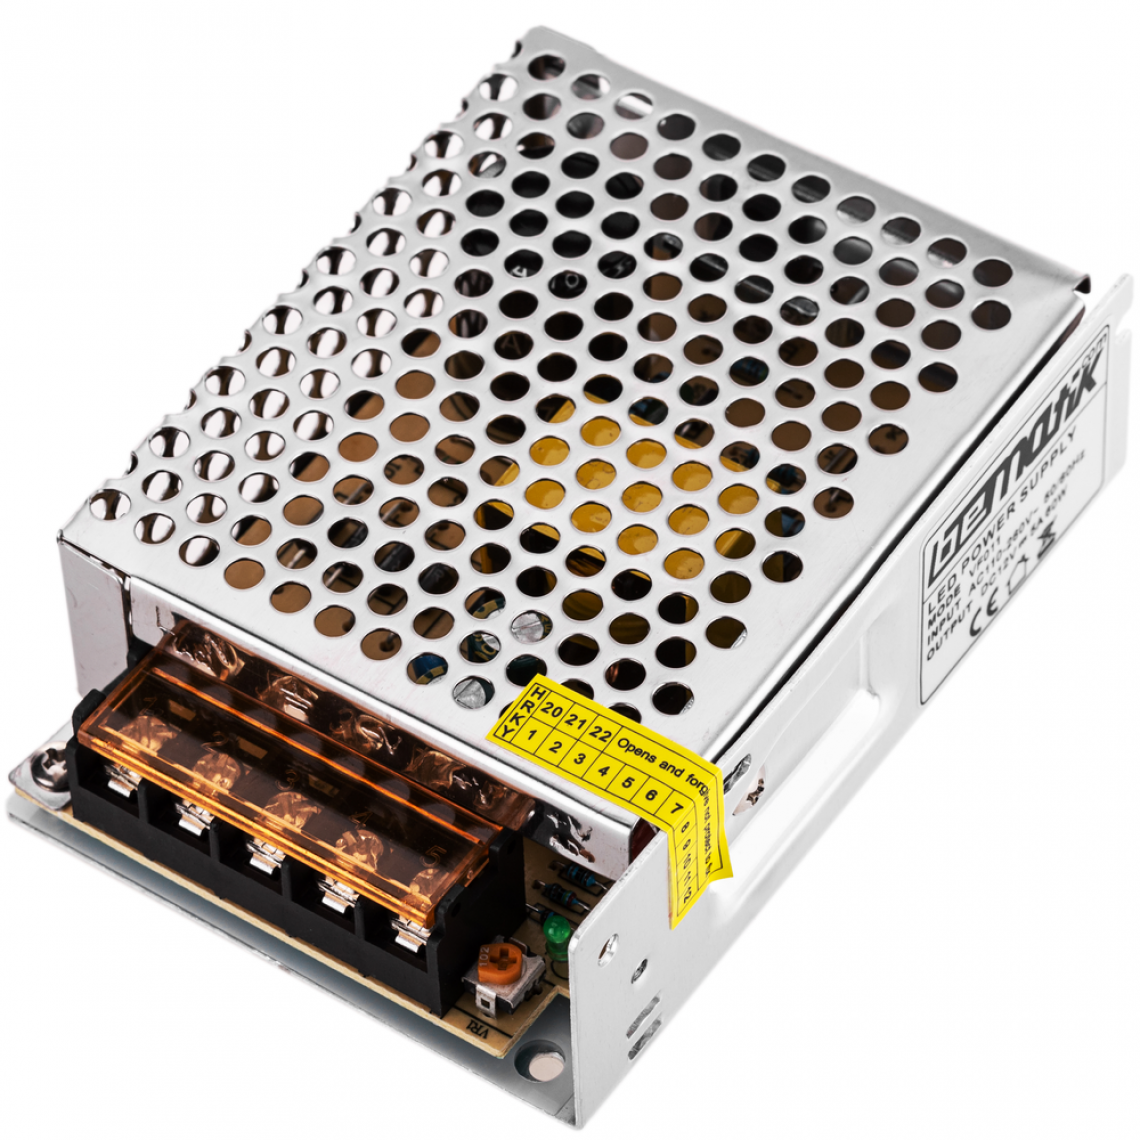 Bematik - Source d'alimentation industrielle 12VDC 5A. Mesures 110 x 77 x 35 mm - Accessoires alimentation